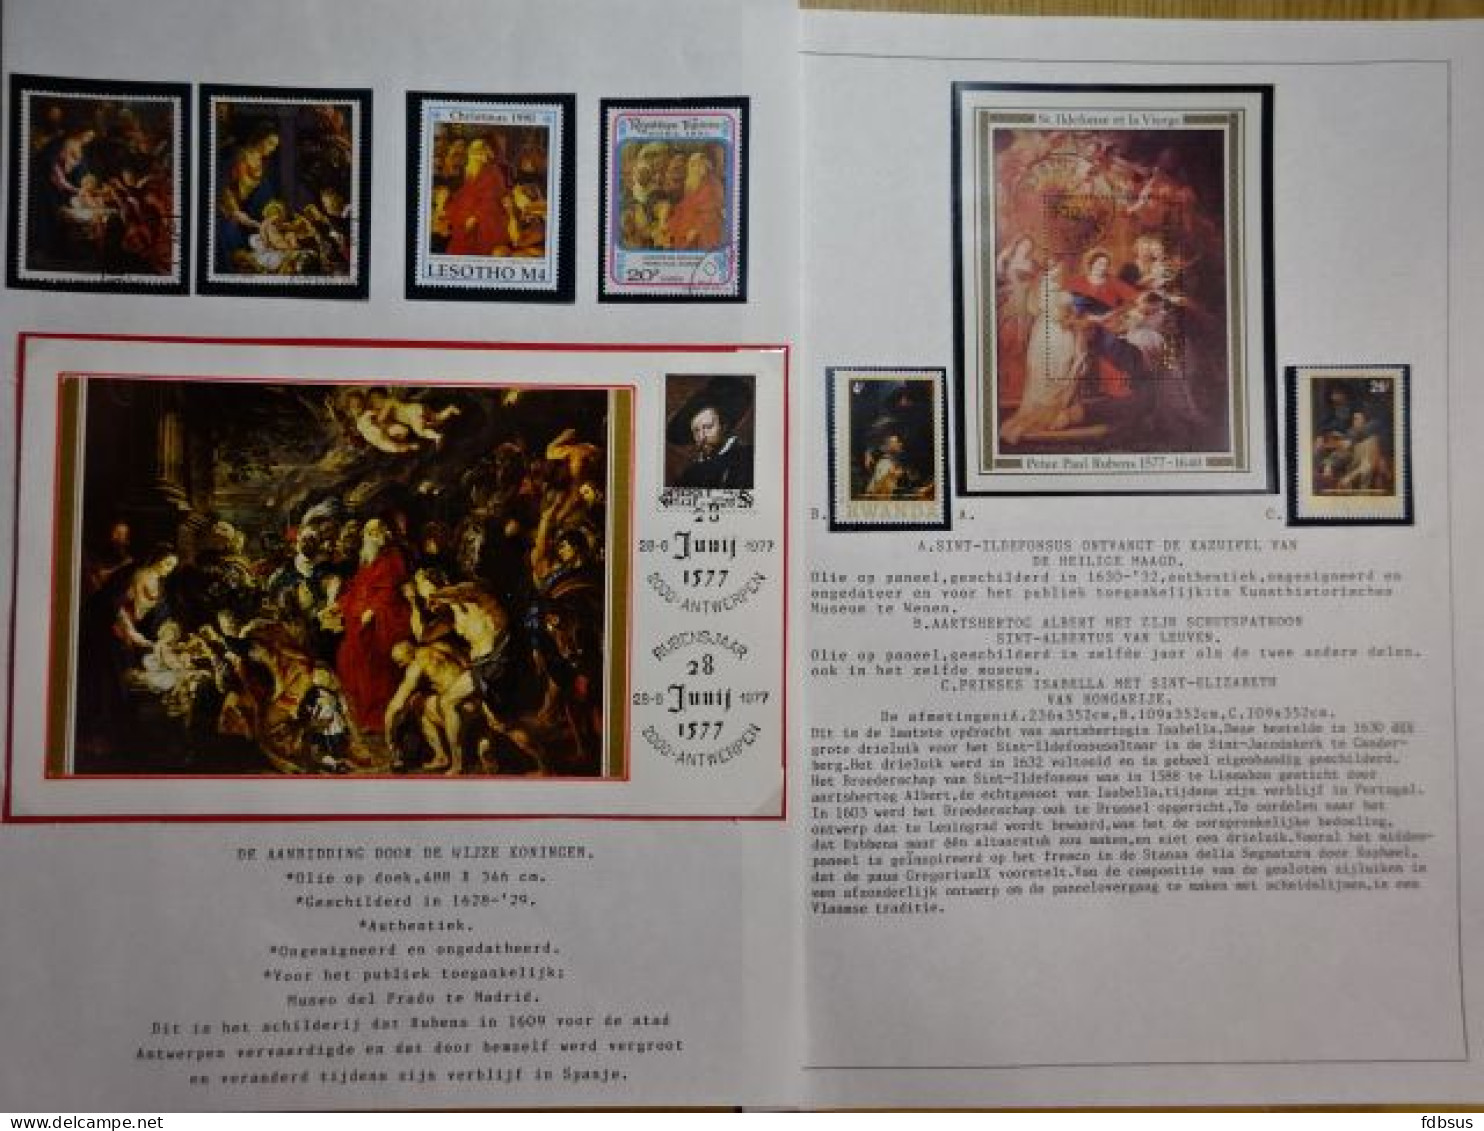 Rubens verzameling - postzegels, blokken, Fdc's , briefkaart en andere van verschillende landen op bladen met uitleg in